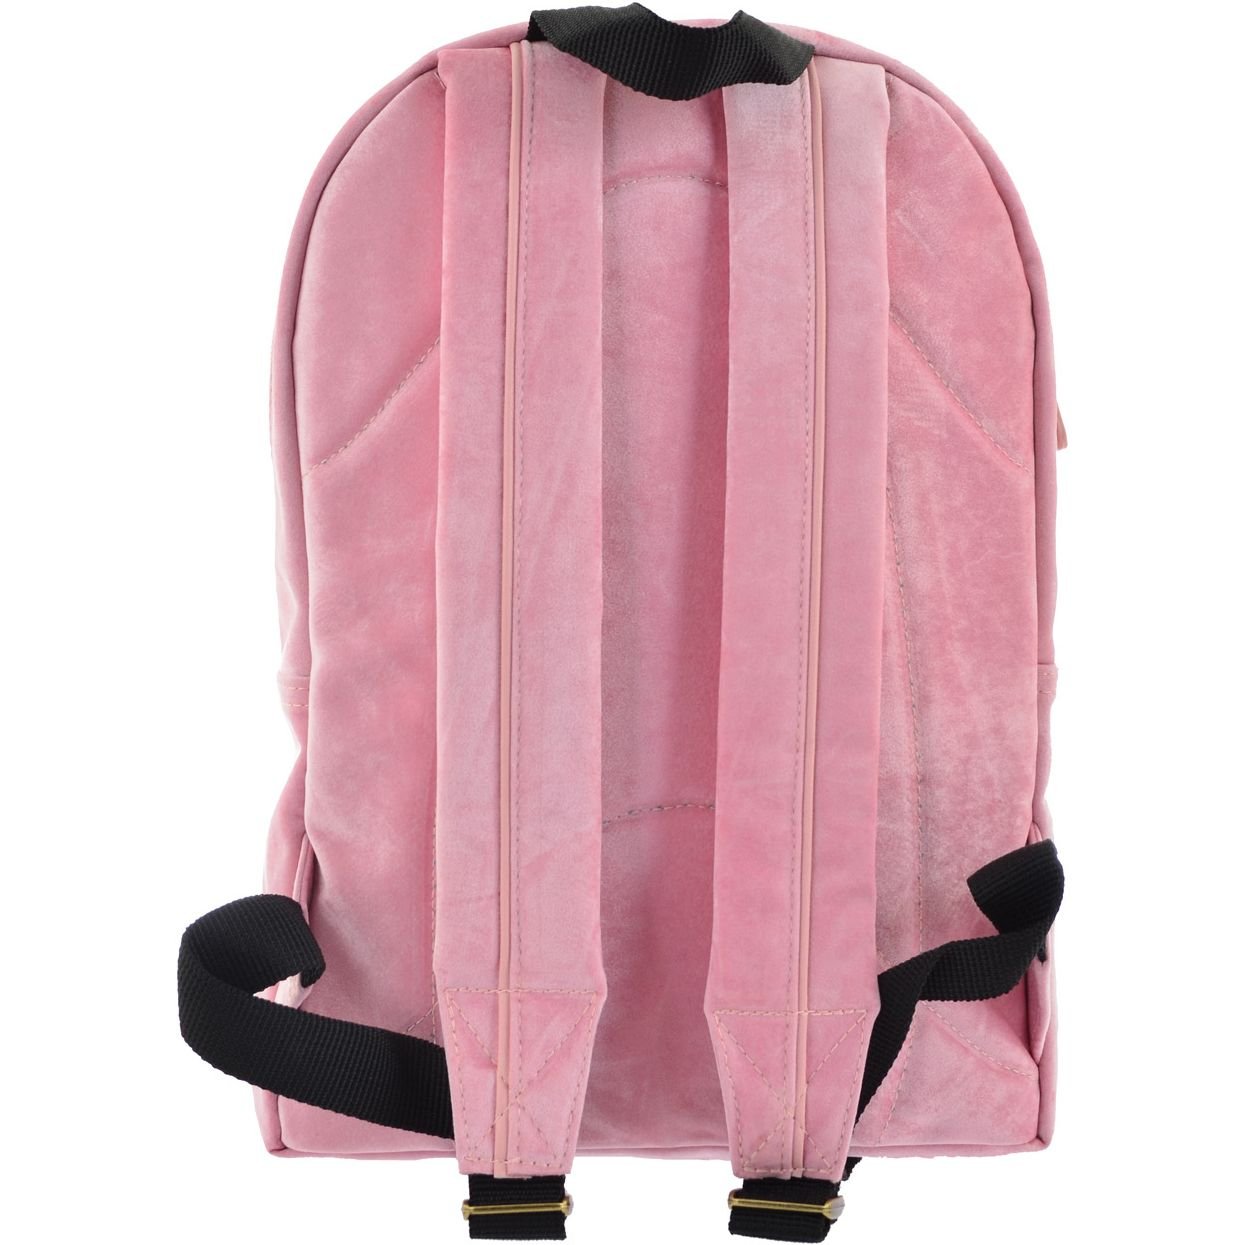 Рюкзак жіночий Yes YW-21 Velour Marlin, розовый (556900) - фото 4